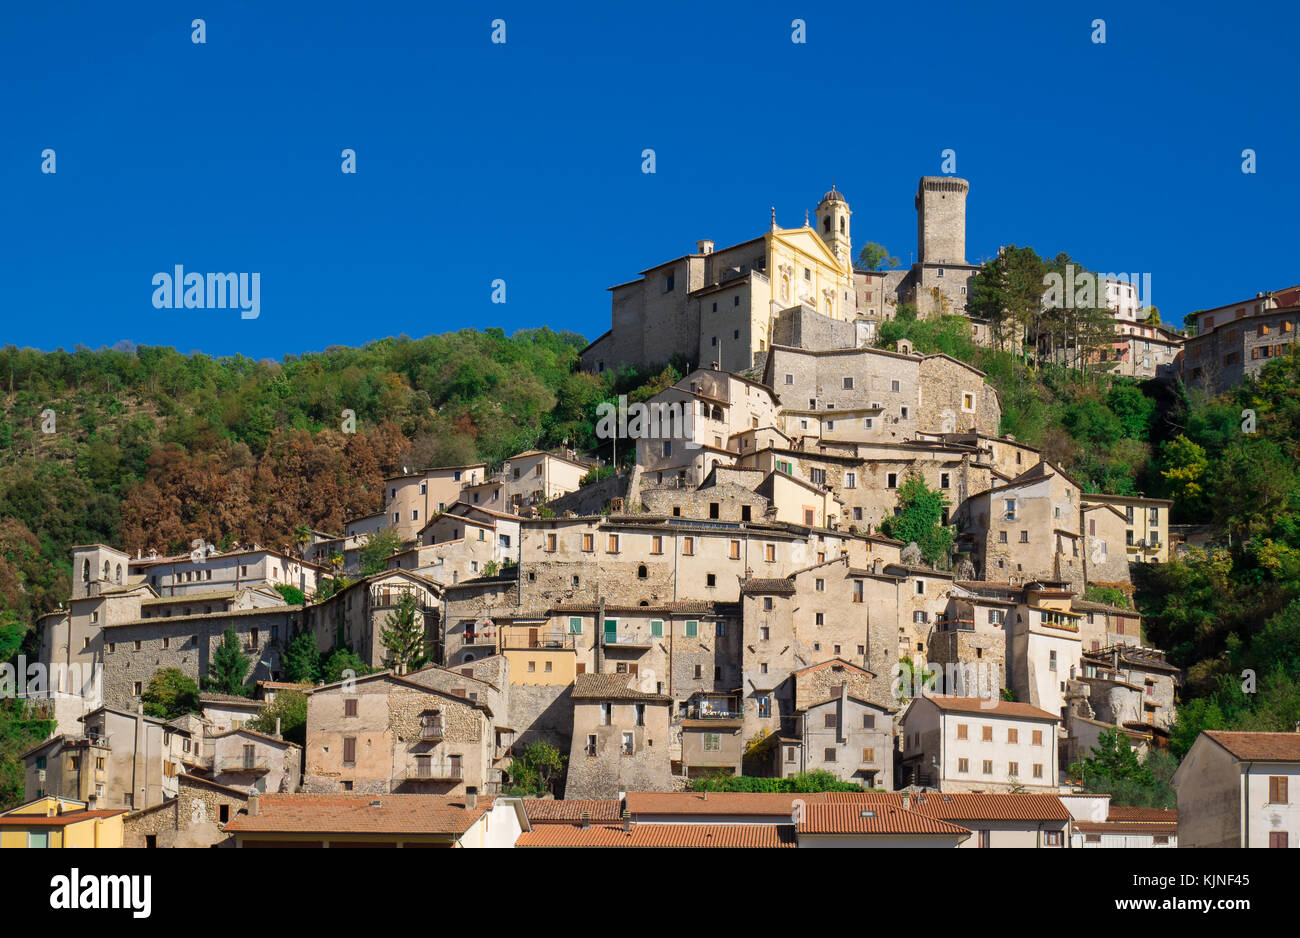 Cantalice (Italia) - il centro storico di un vecchio e molto poco stone town in sabina regione, provincia di Rieti, Italia centrale Foto Stock